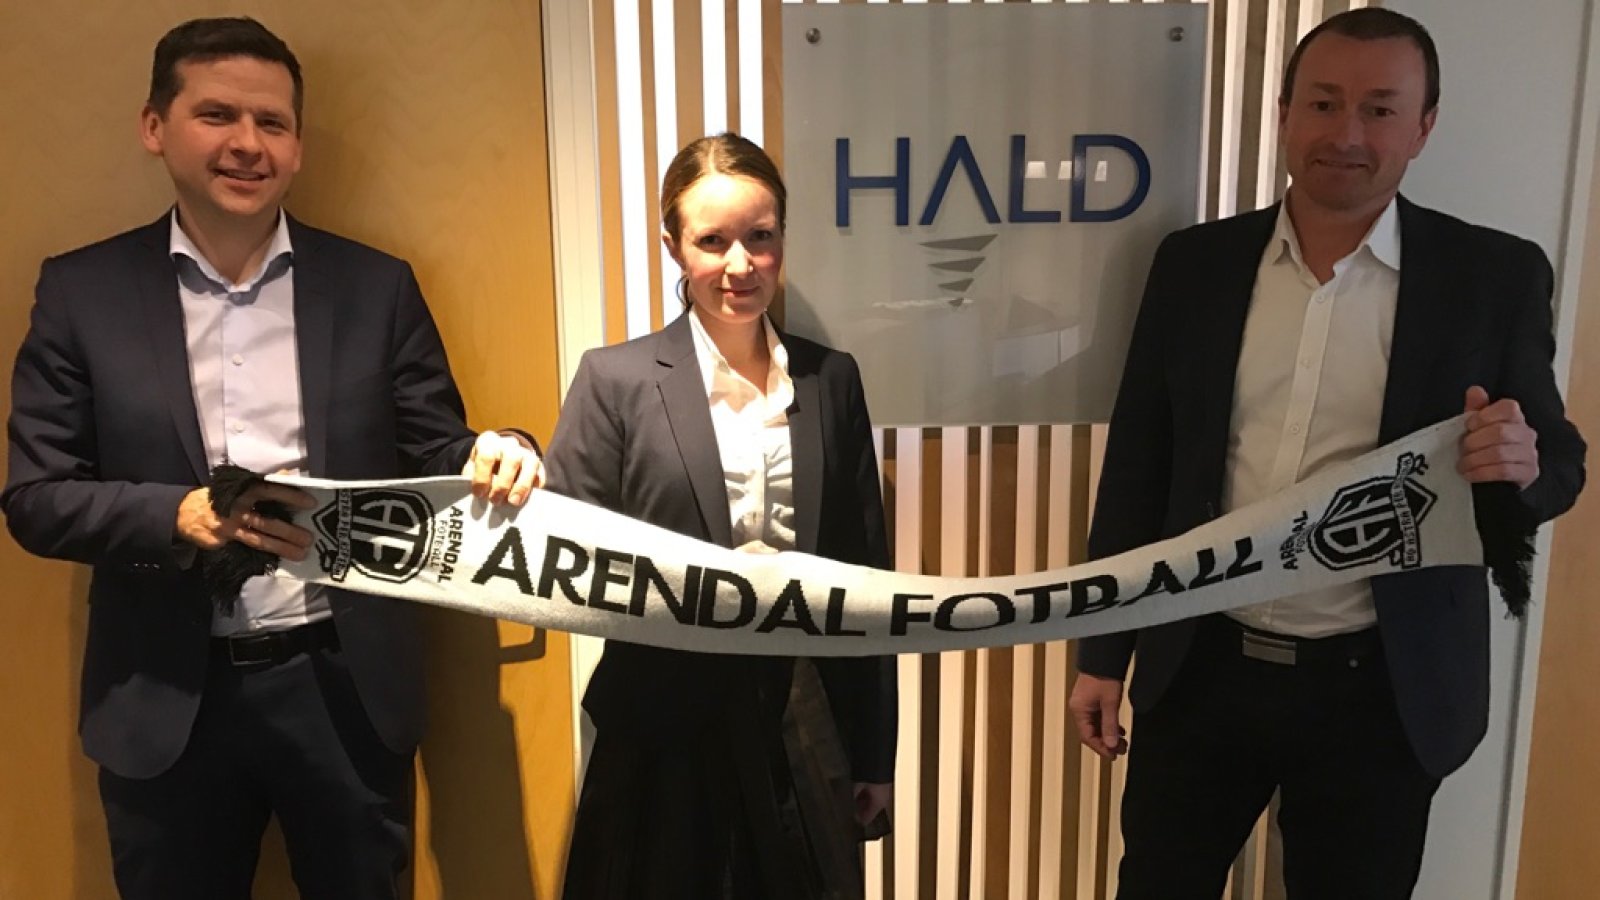 Ole Magnus Heimvik, Oda Gravås og Magne Olsen hos Advokatfirma Hald & co heier på Arendal Fotball og gleder seg veldig til seriestart!